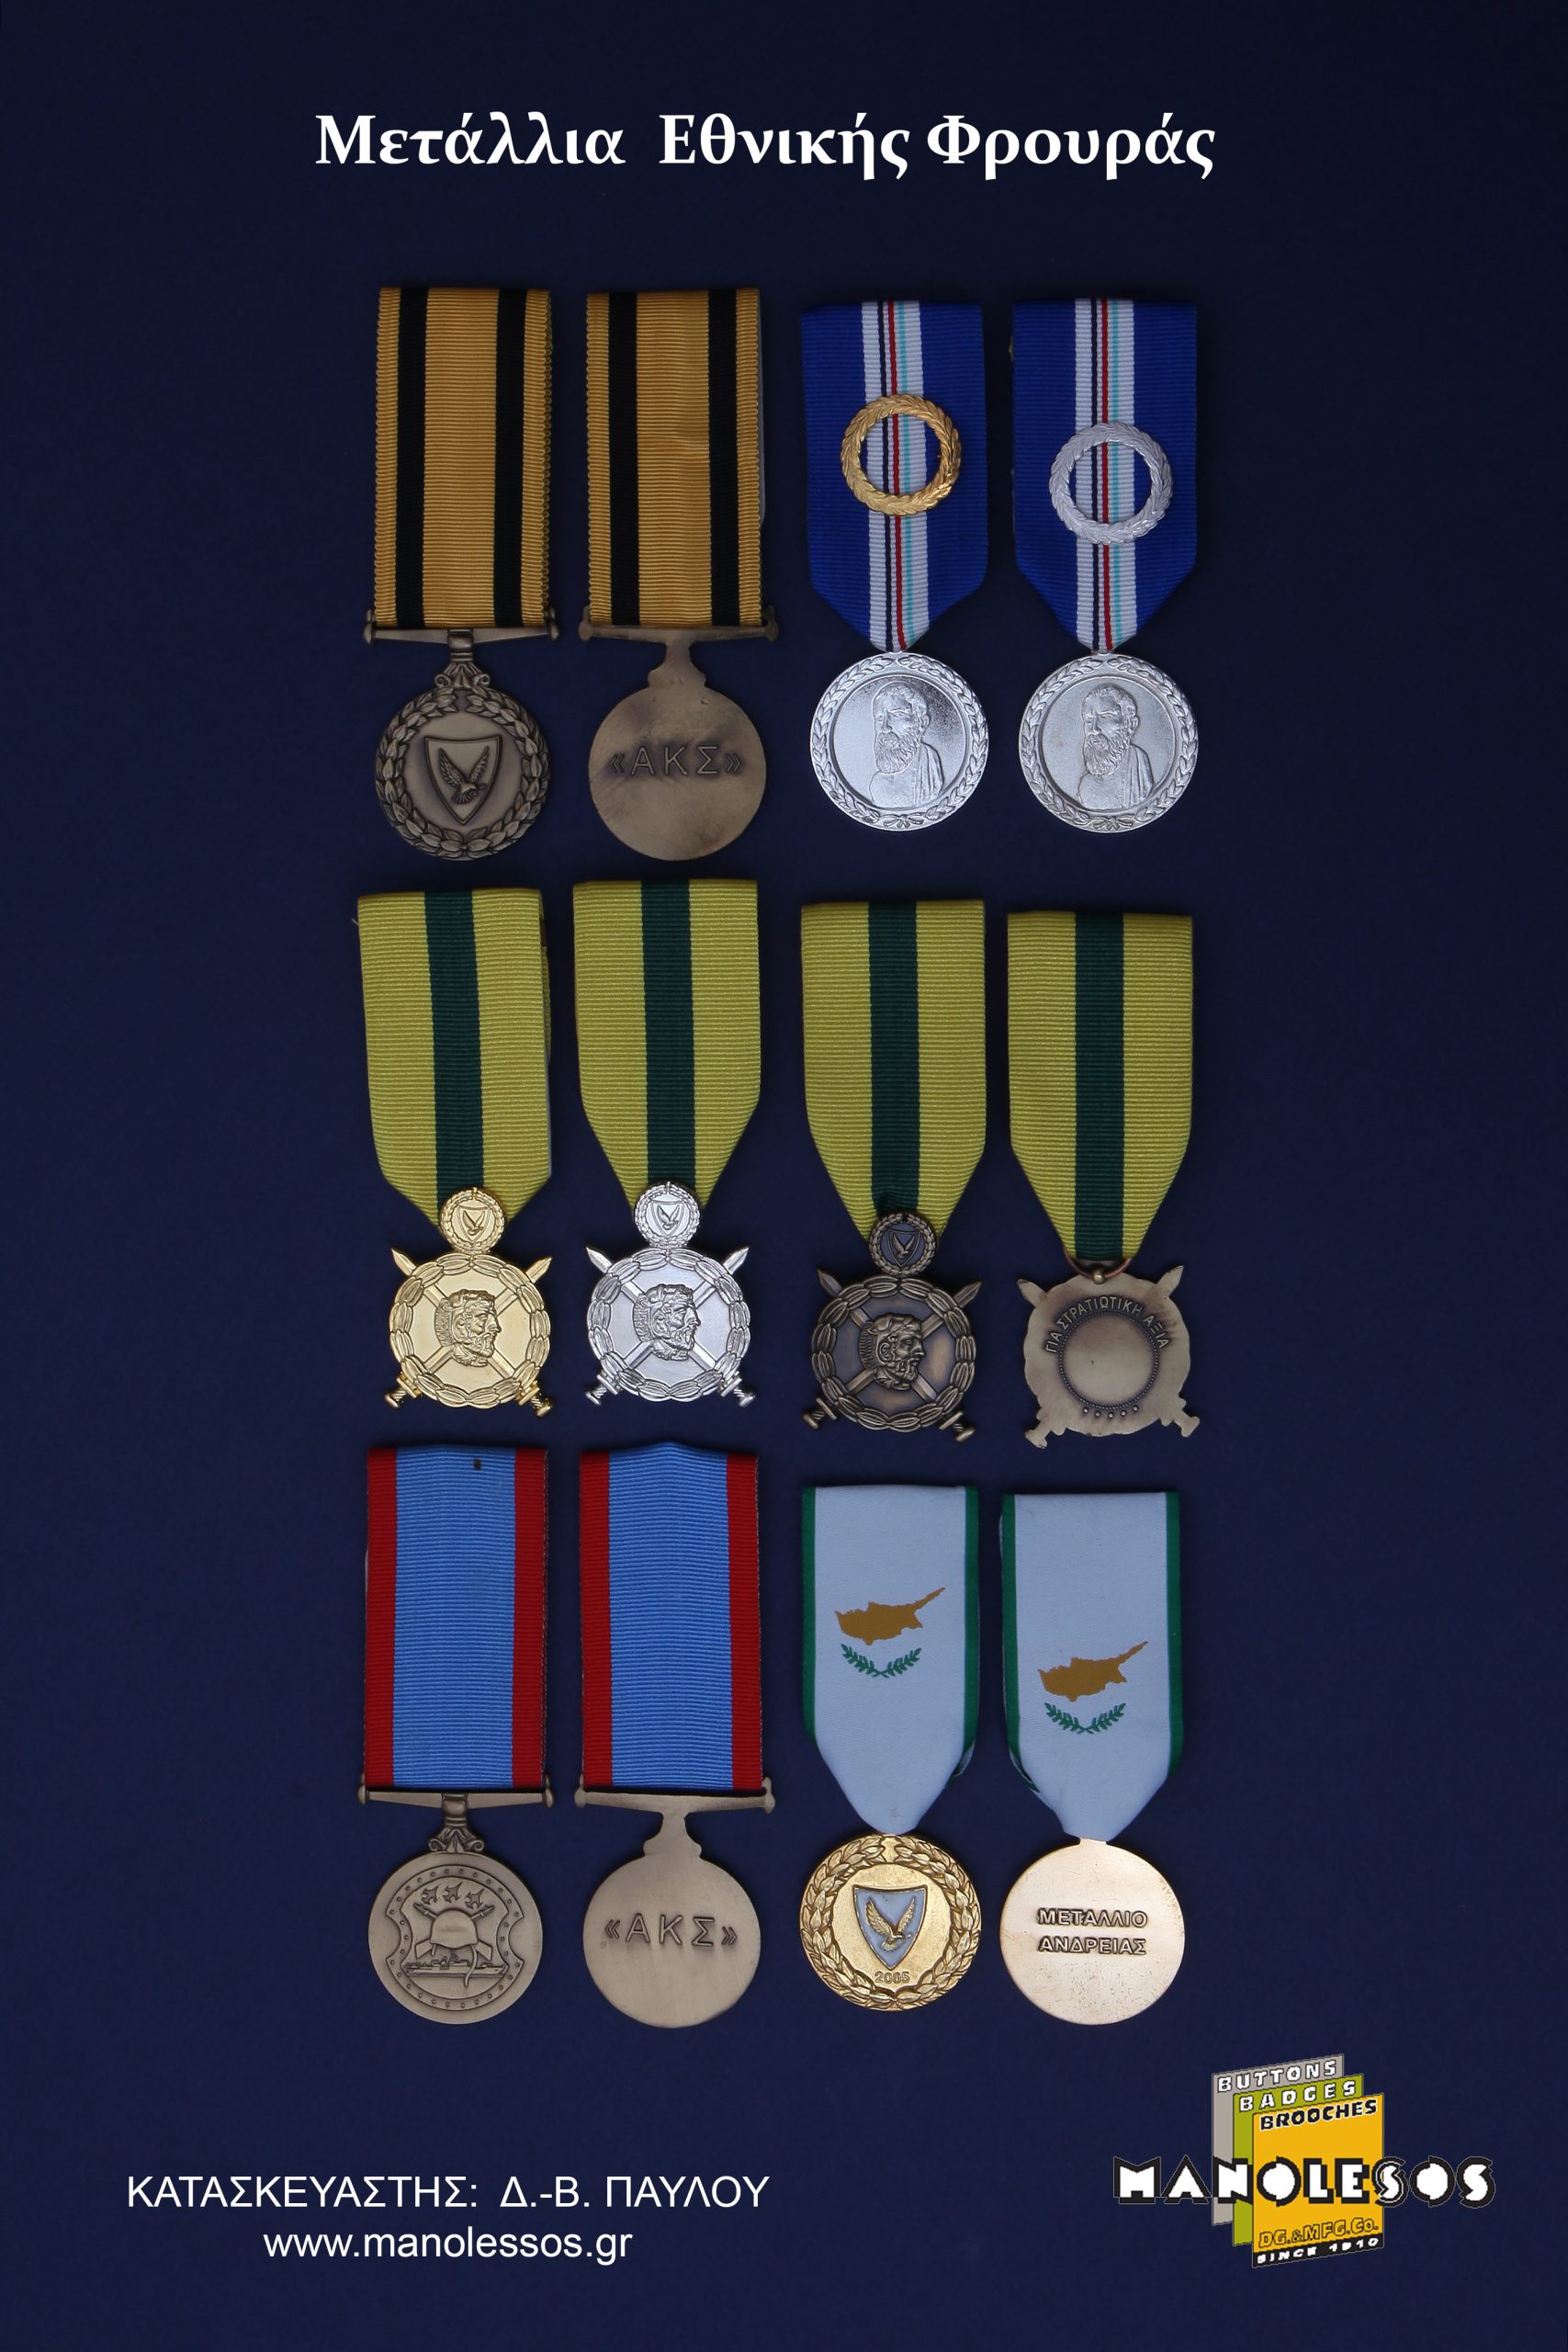 Μετάλλια Εθνικής Φρουράς για την Κύπρο από τη Μανωλέσος. 002